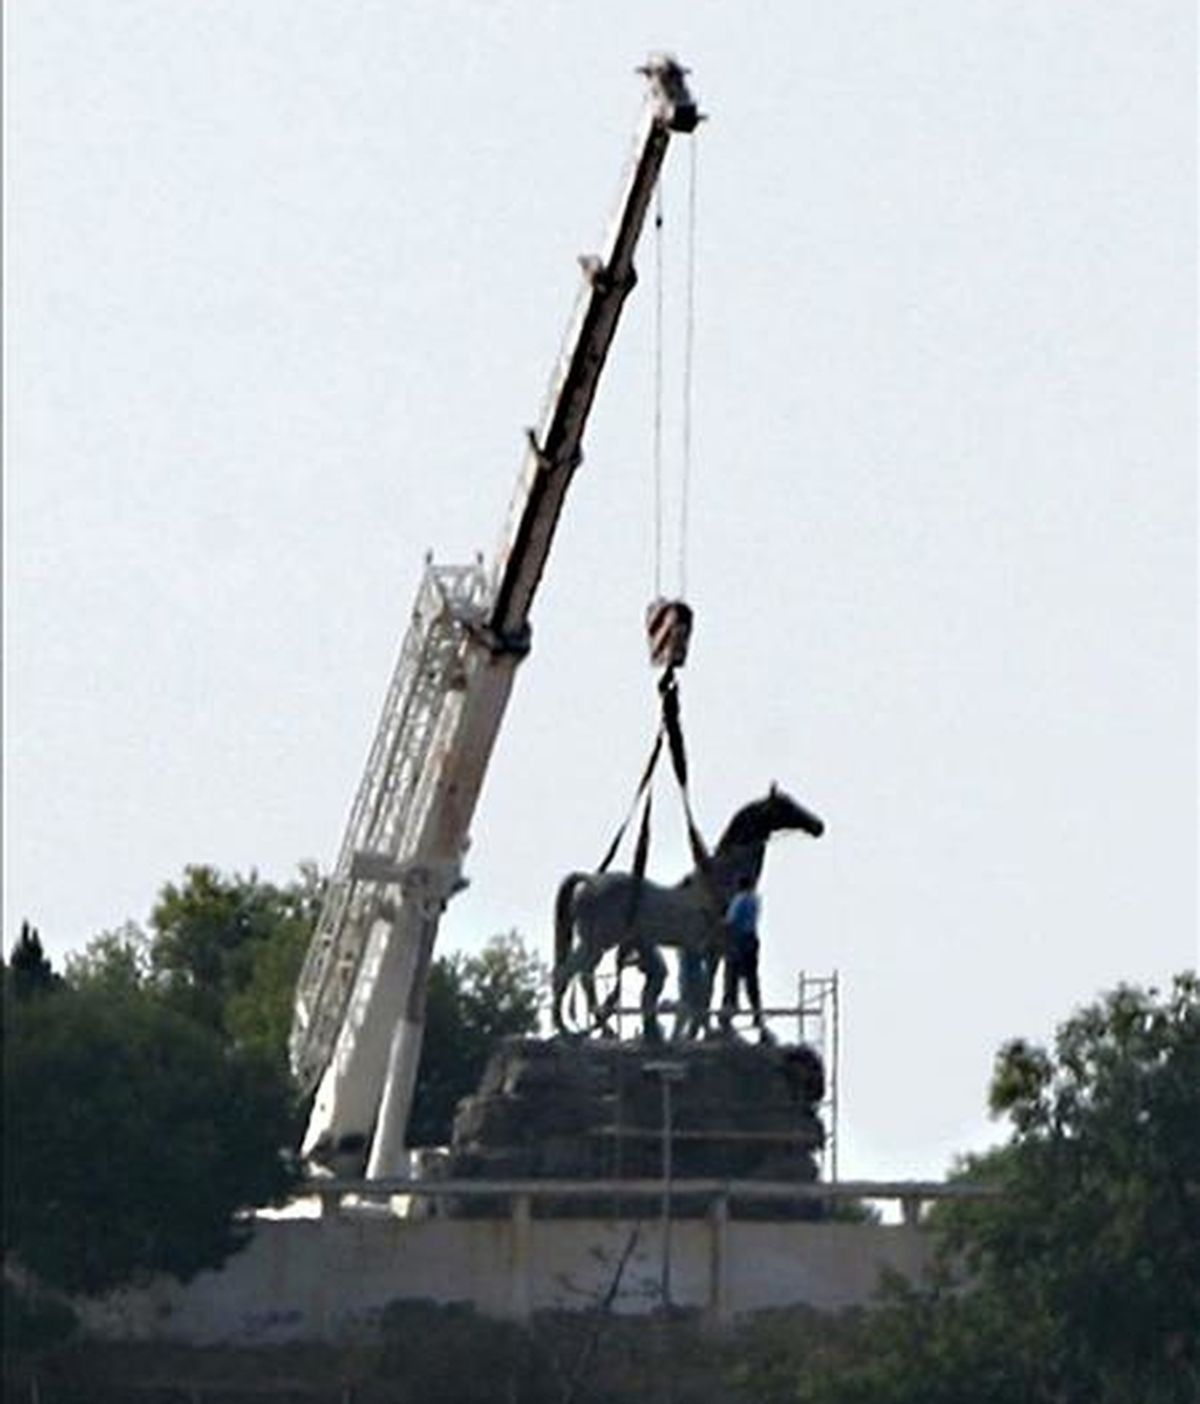 Una estatua ecuestre de Francisco Franco, la última del dictador montado a caballo que quedaba expuesta en España, fue retirada hoy del lugar donde permanecía, en el interior de un cuartel de la Legión, en Melilla. EFE